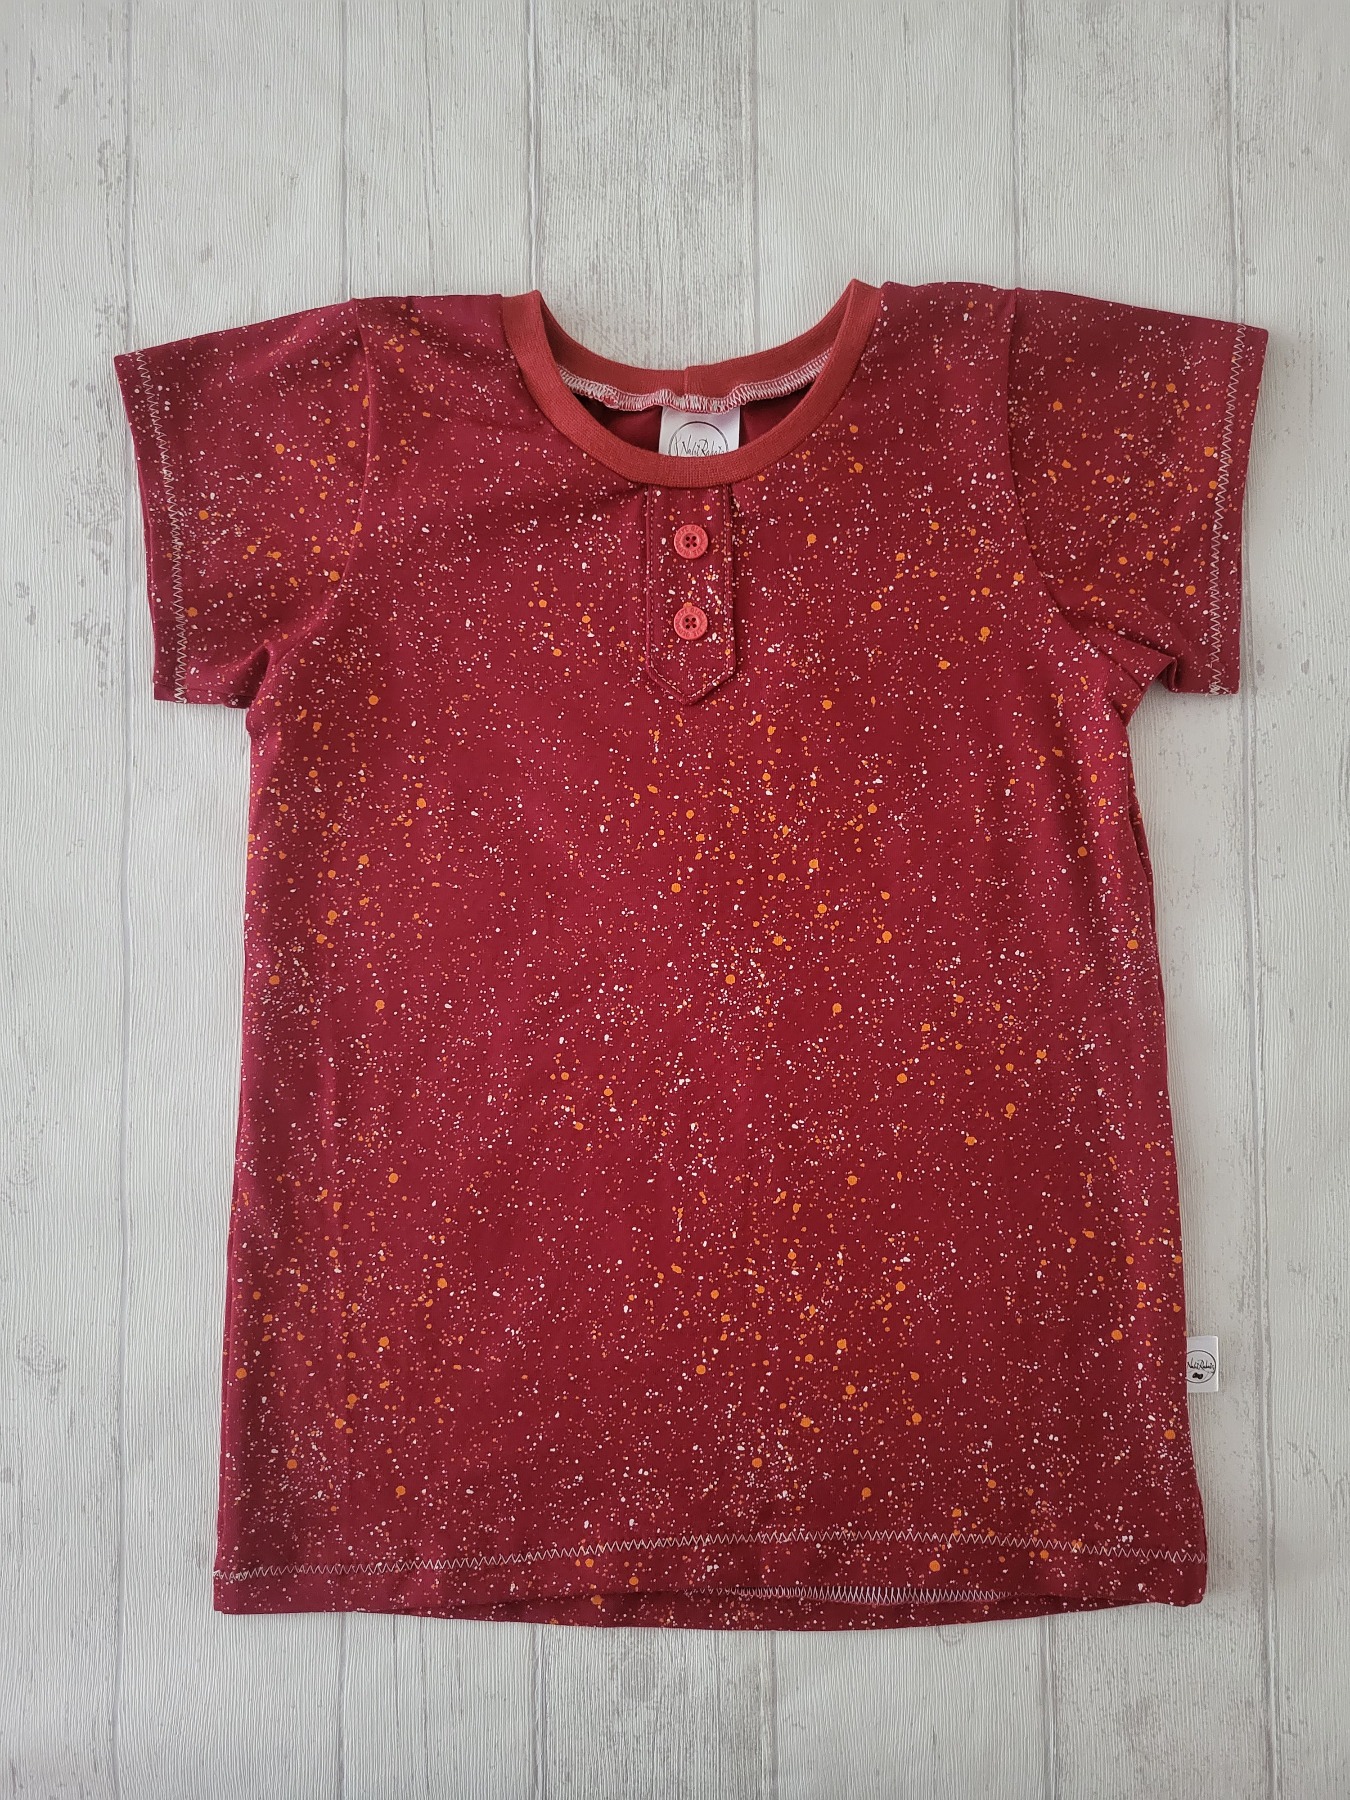 Sofortkauf Handmade T-Shirt kurzarm Sprenkel rot Gr. 134 von NahtRabatz